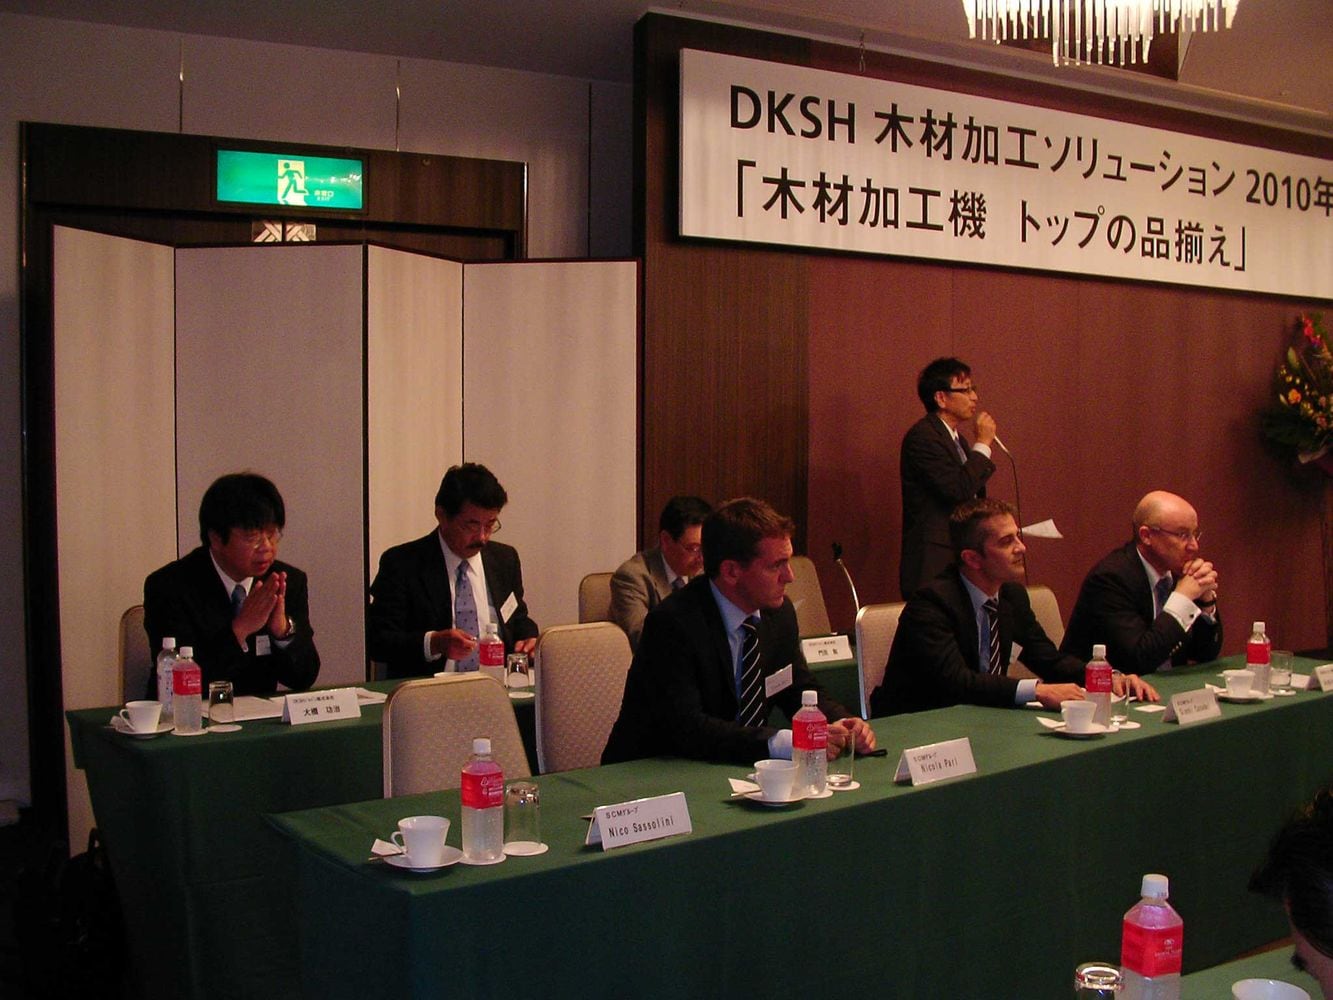 OPEN HOUSE DKSH 2010 IN JAPAN